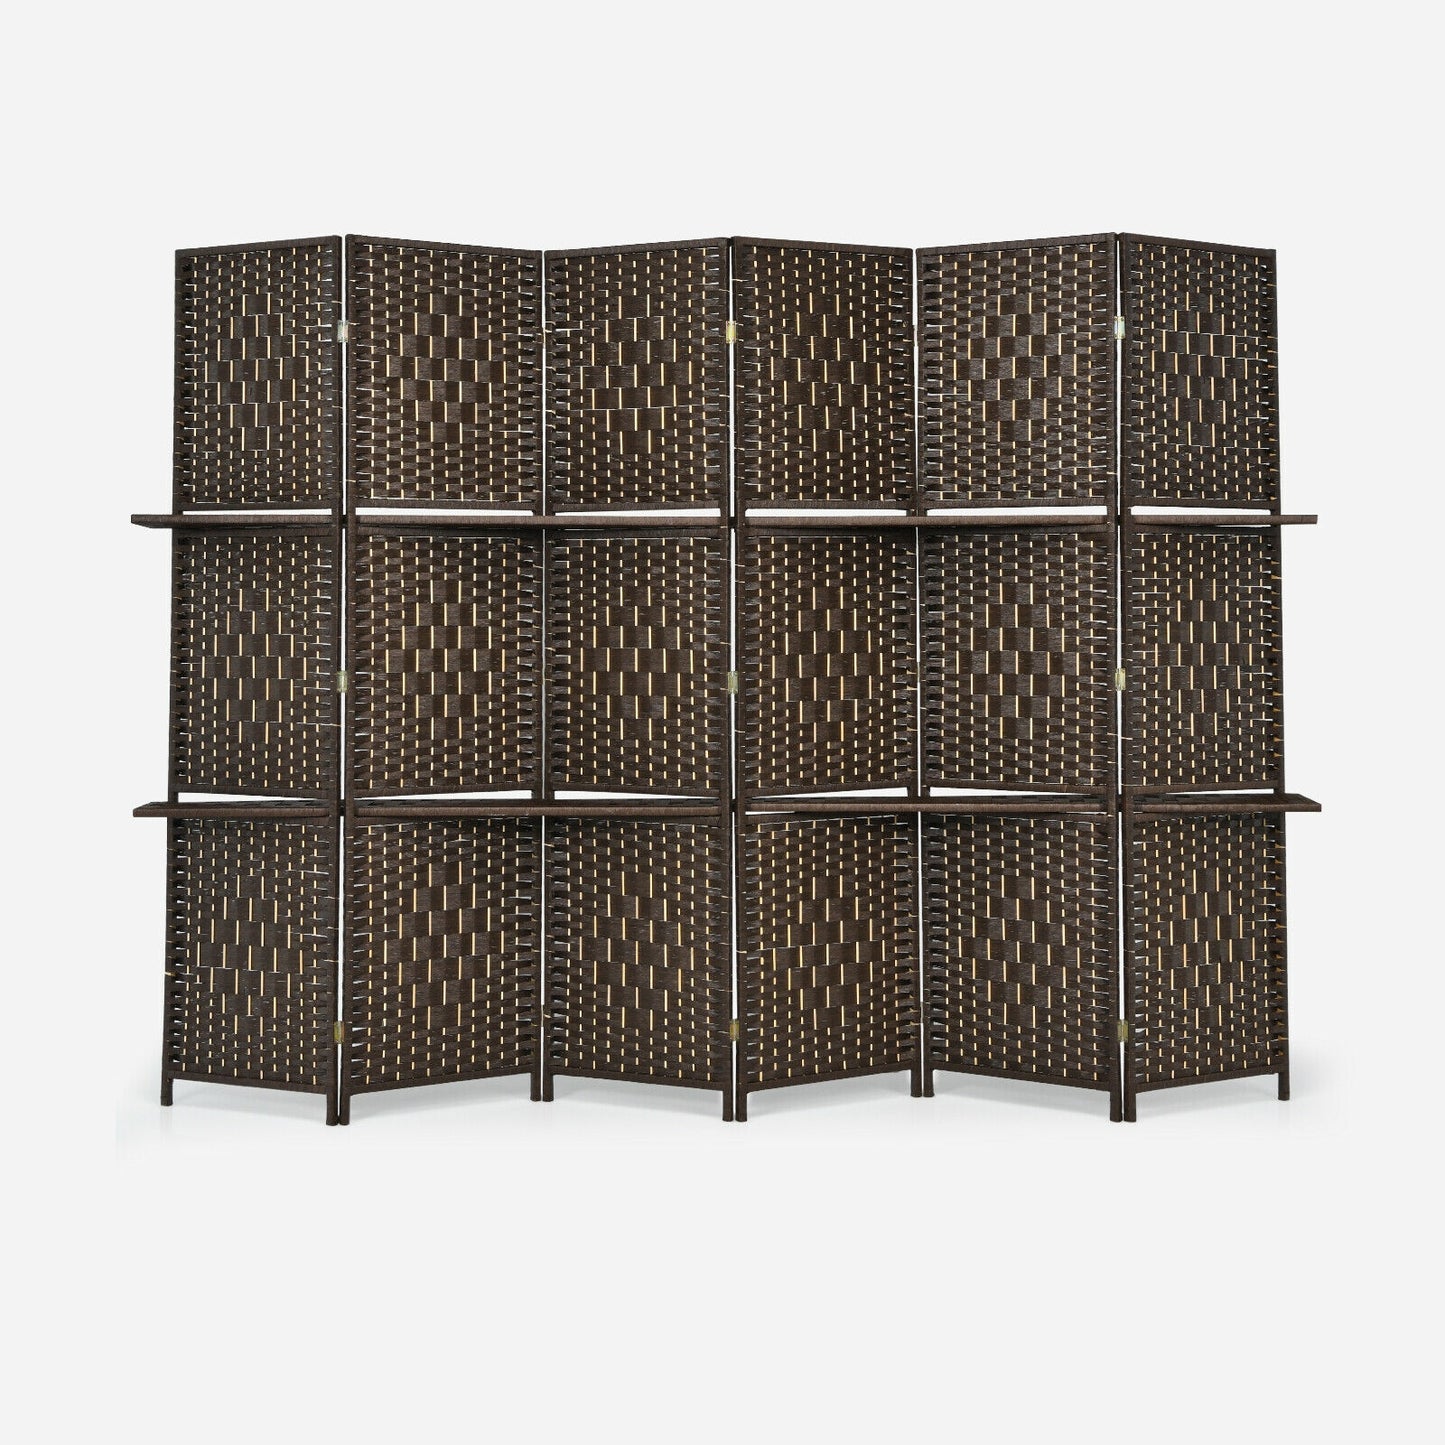 6 Panel Folding Weave Fiber Room Divider with 2 Display Shelves -Brown